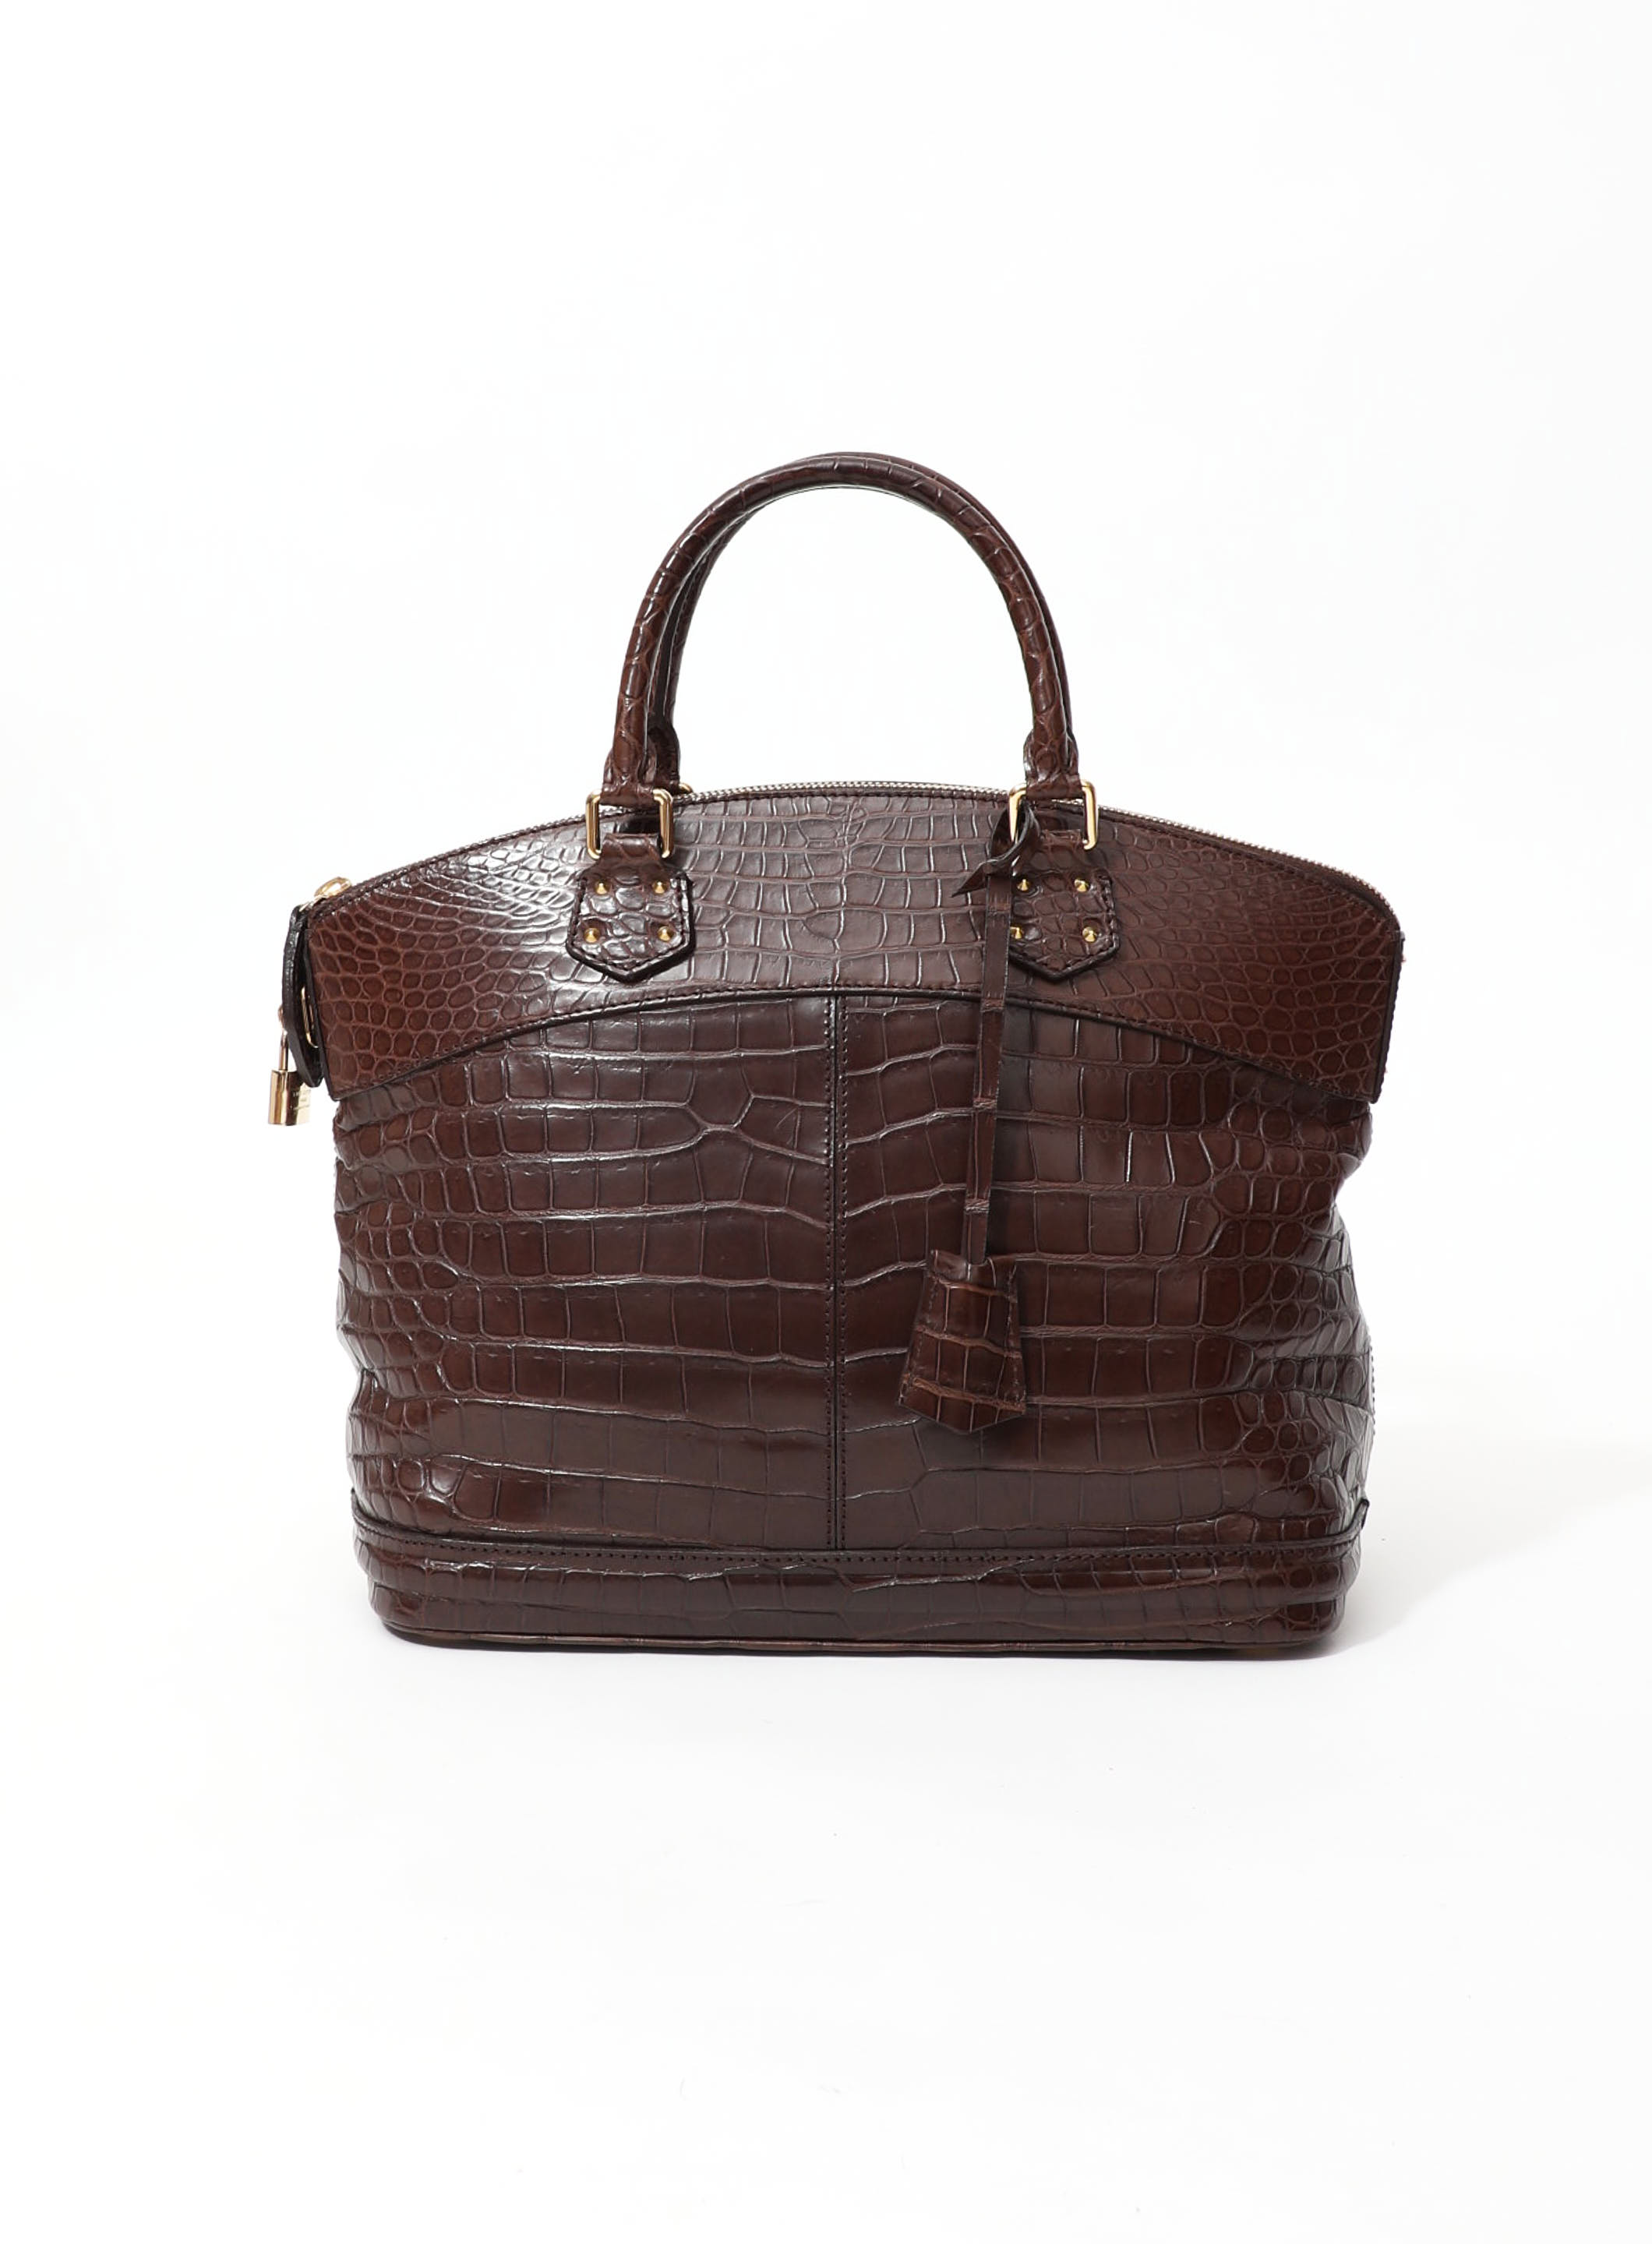 Louis Vuitton Lockit PM Bag